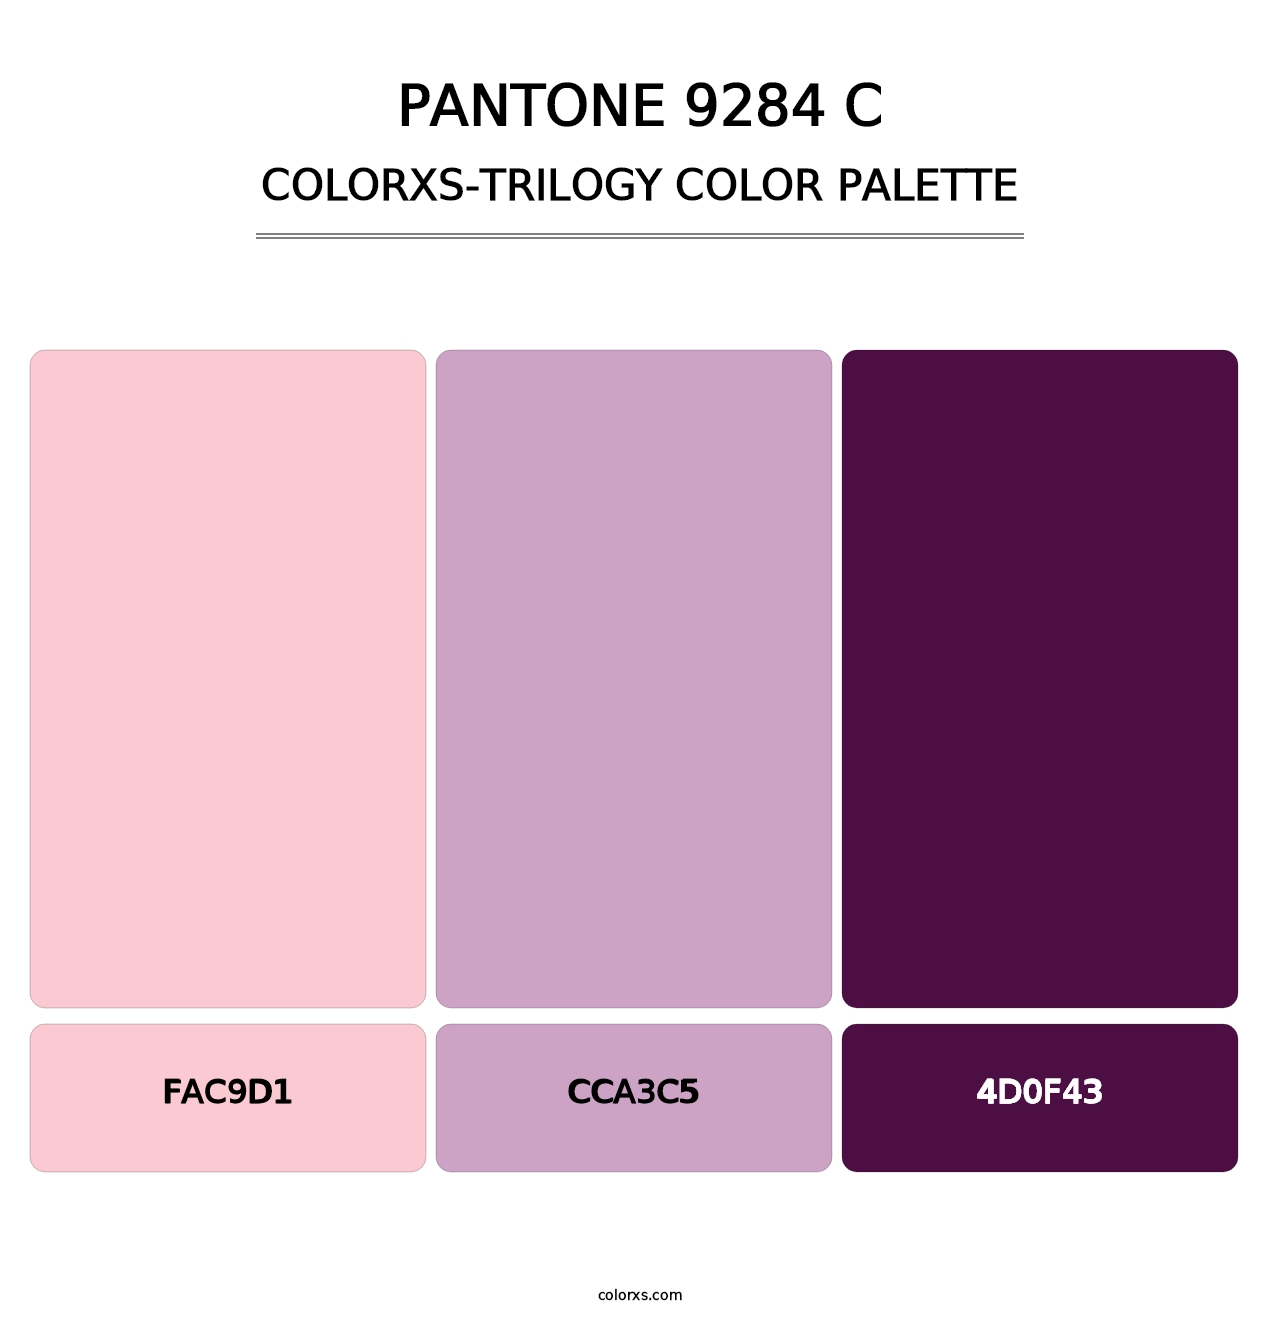 PANTONE 9284 C - Colorxs Trilogy Palette